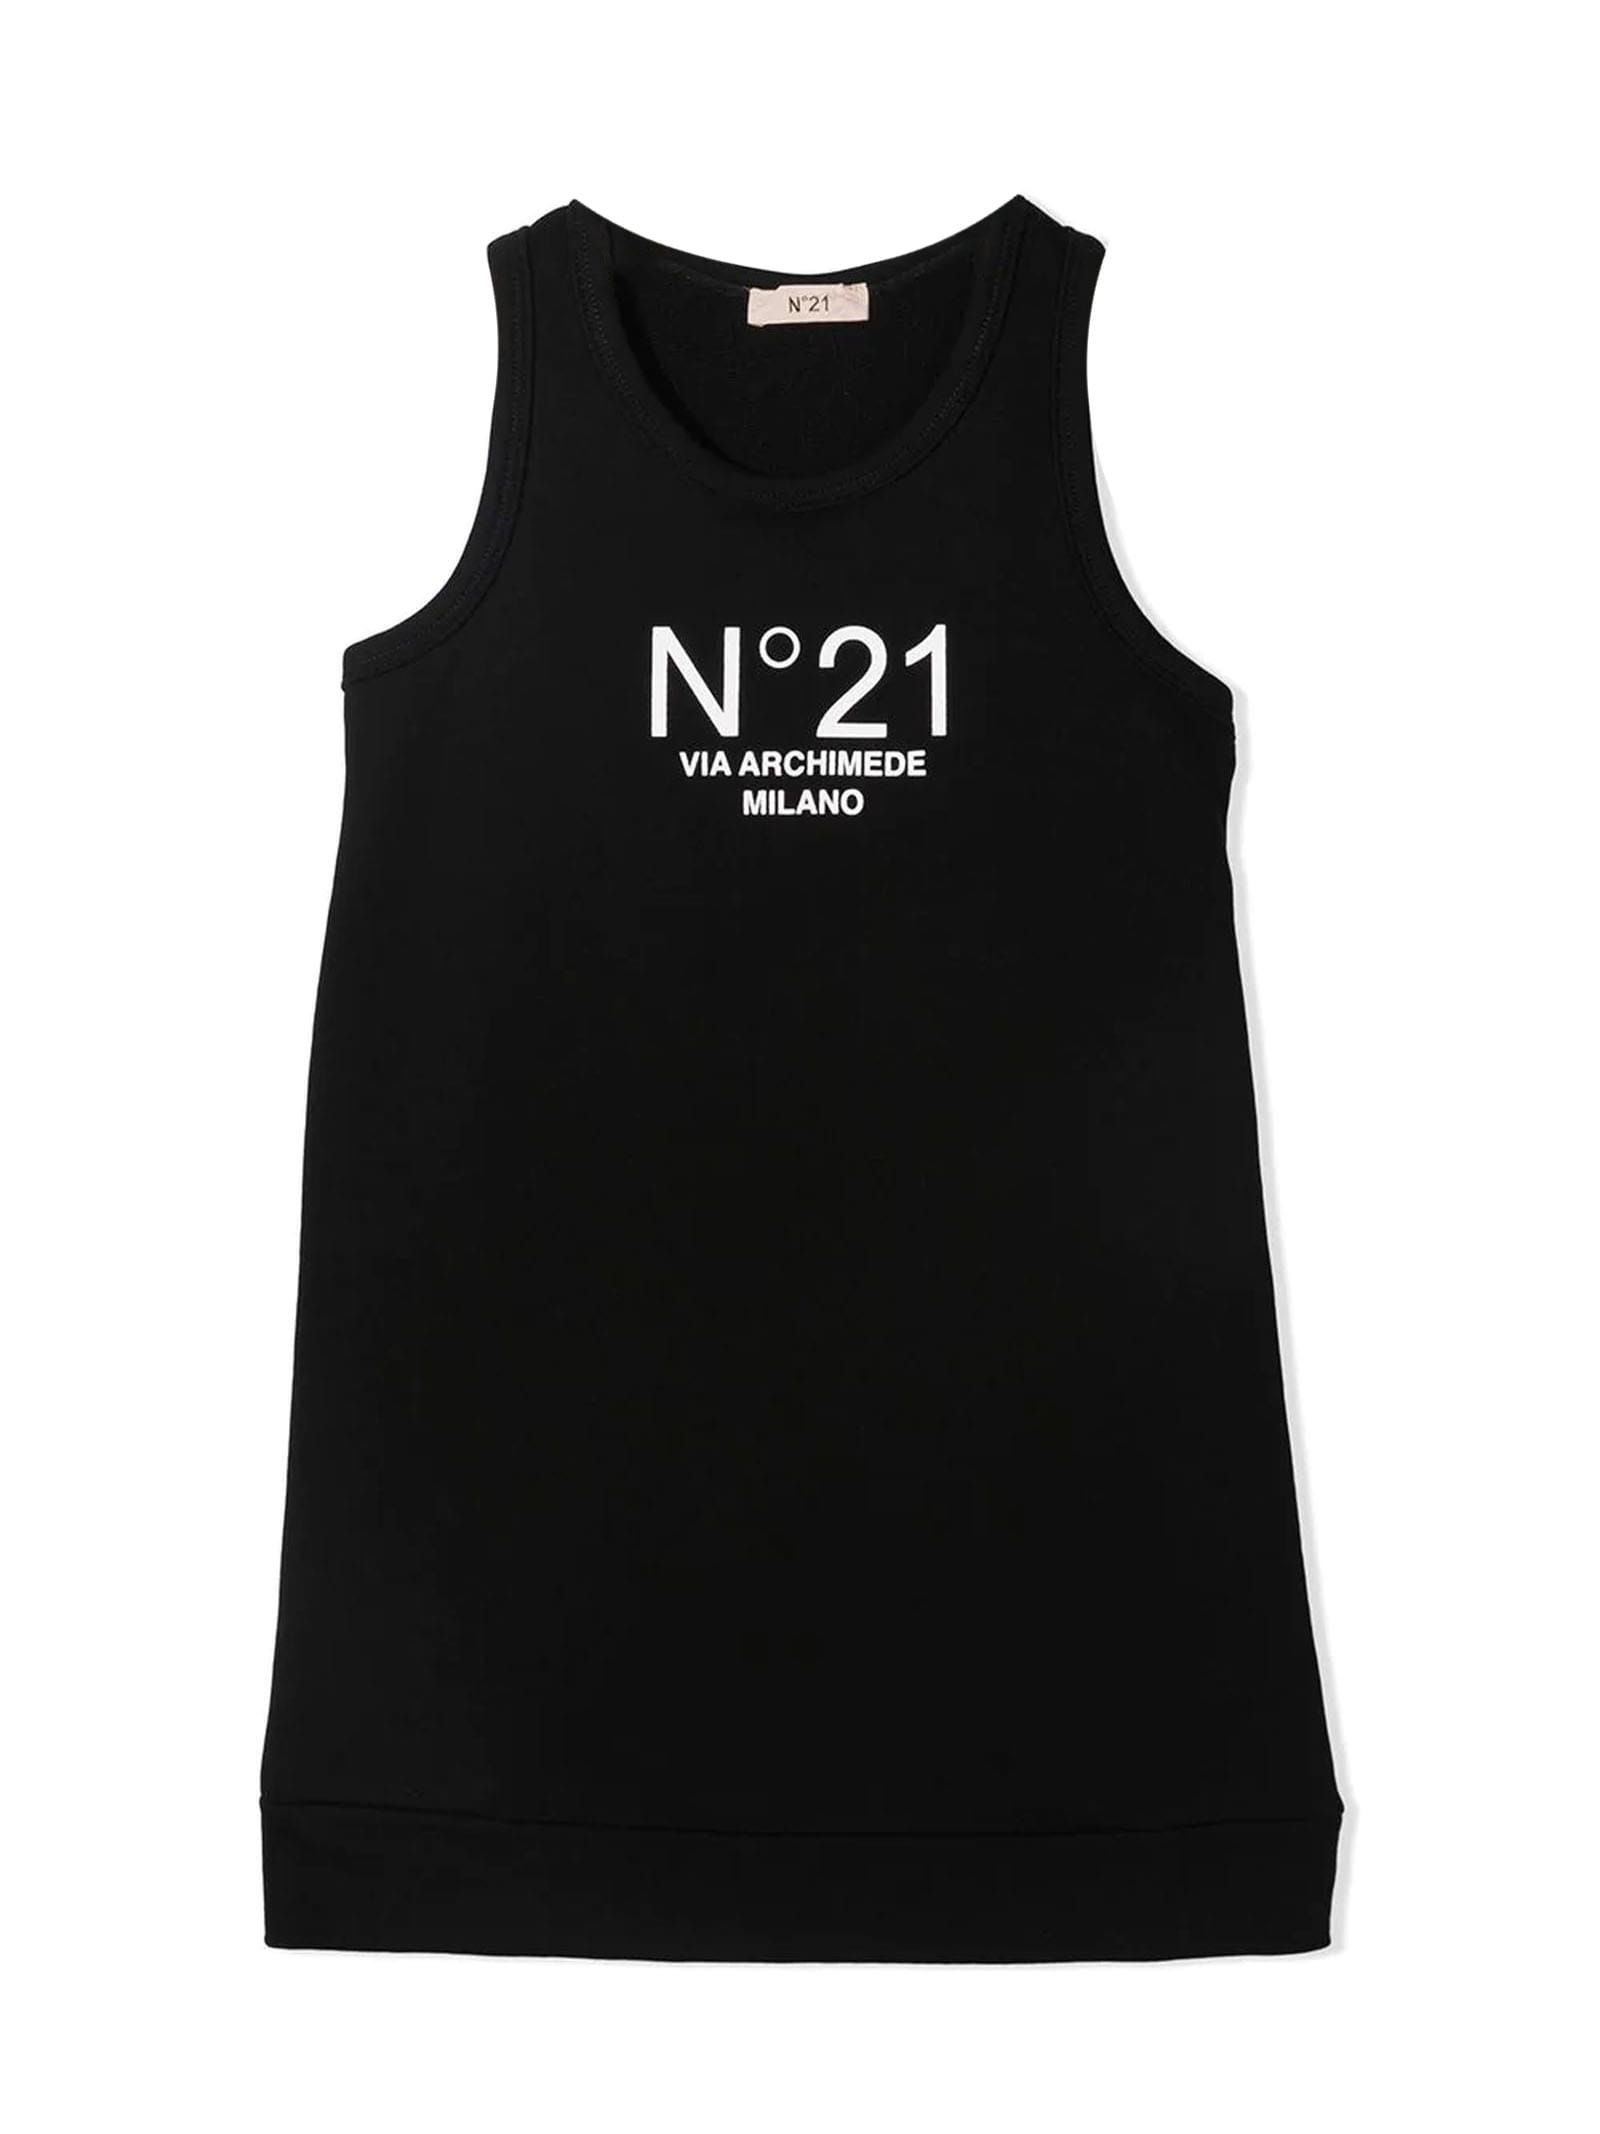 N.21 Black Cotton Dress